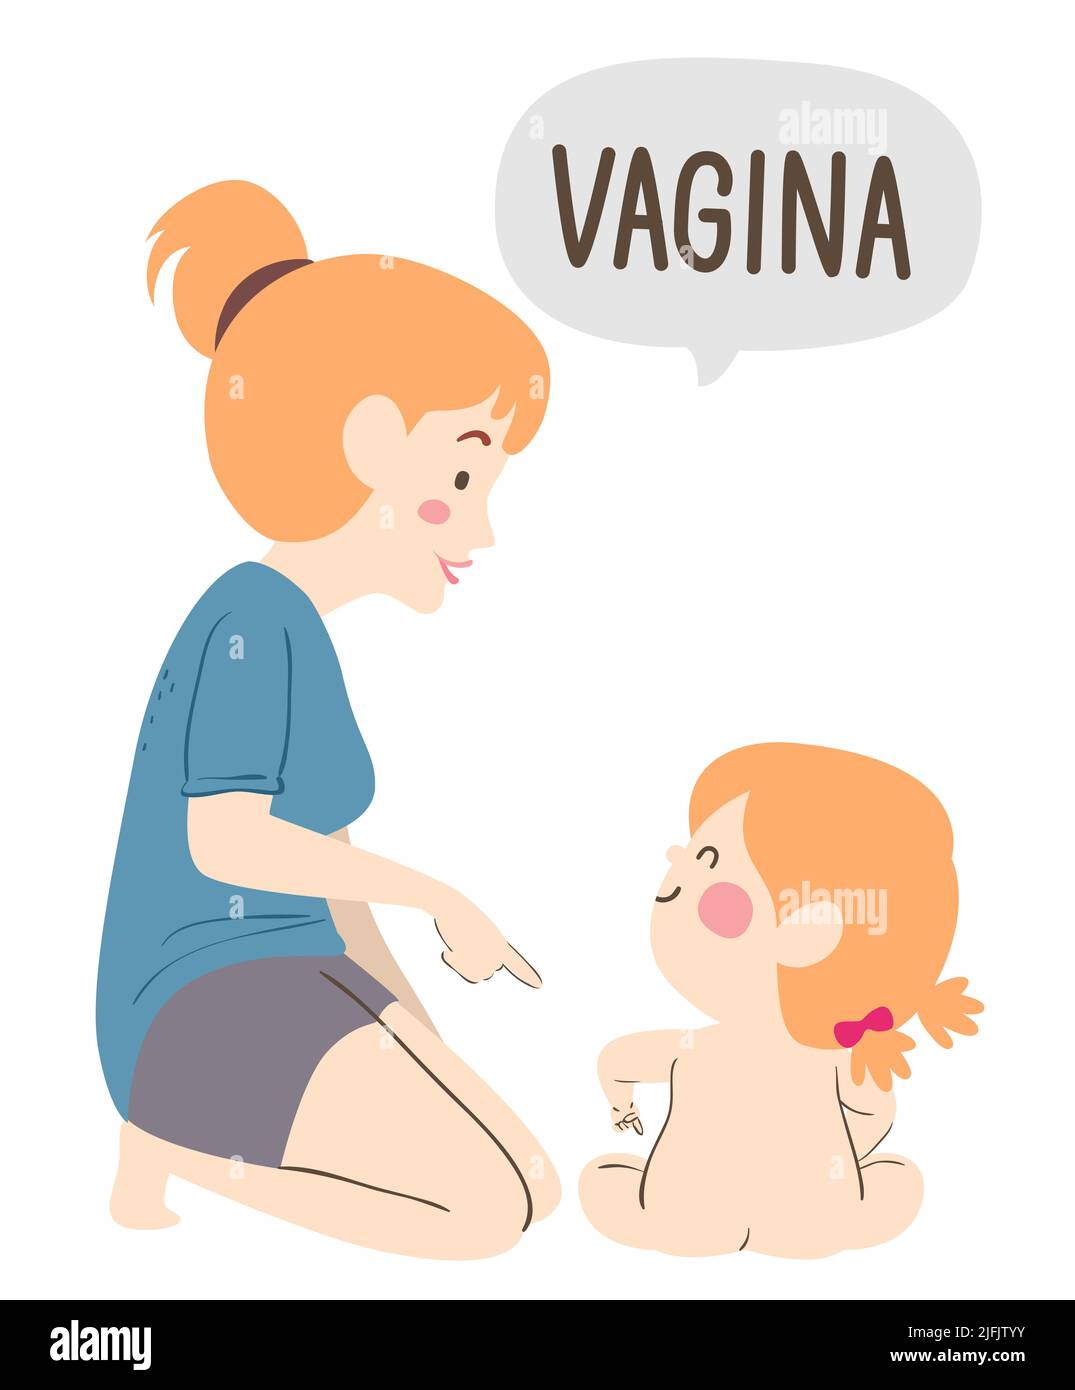 Ilustración de Kid Girl sentada señalando su parte privada del cuerpo, mamá señalando y diciendo vagina Foto de stock